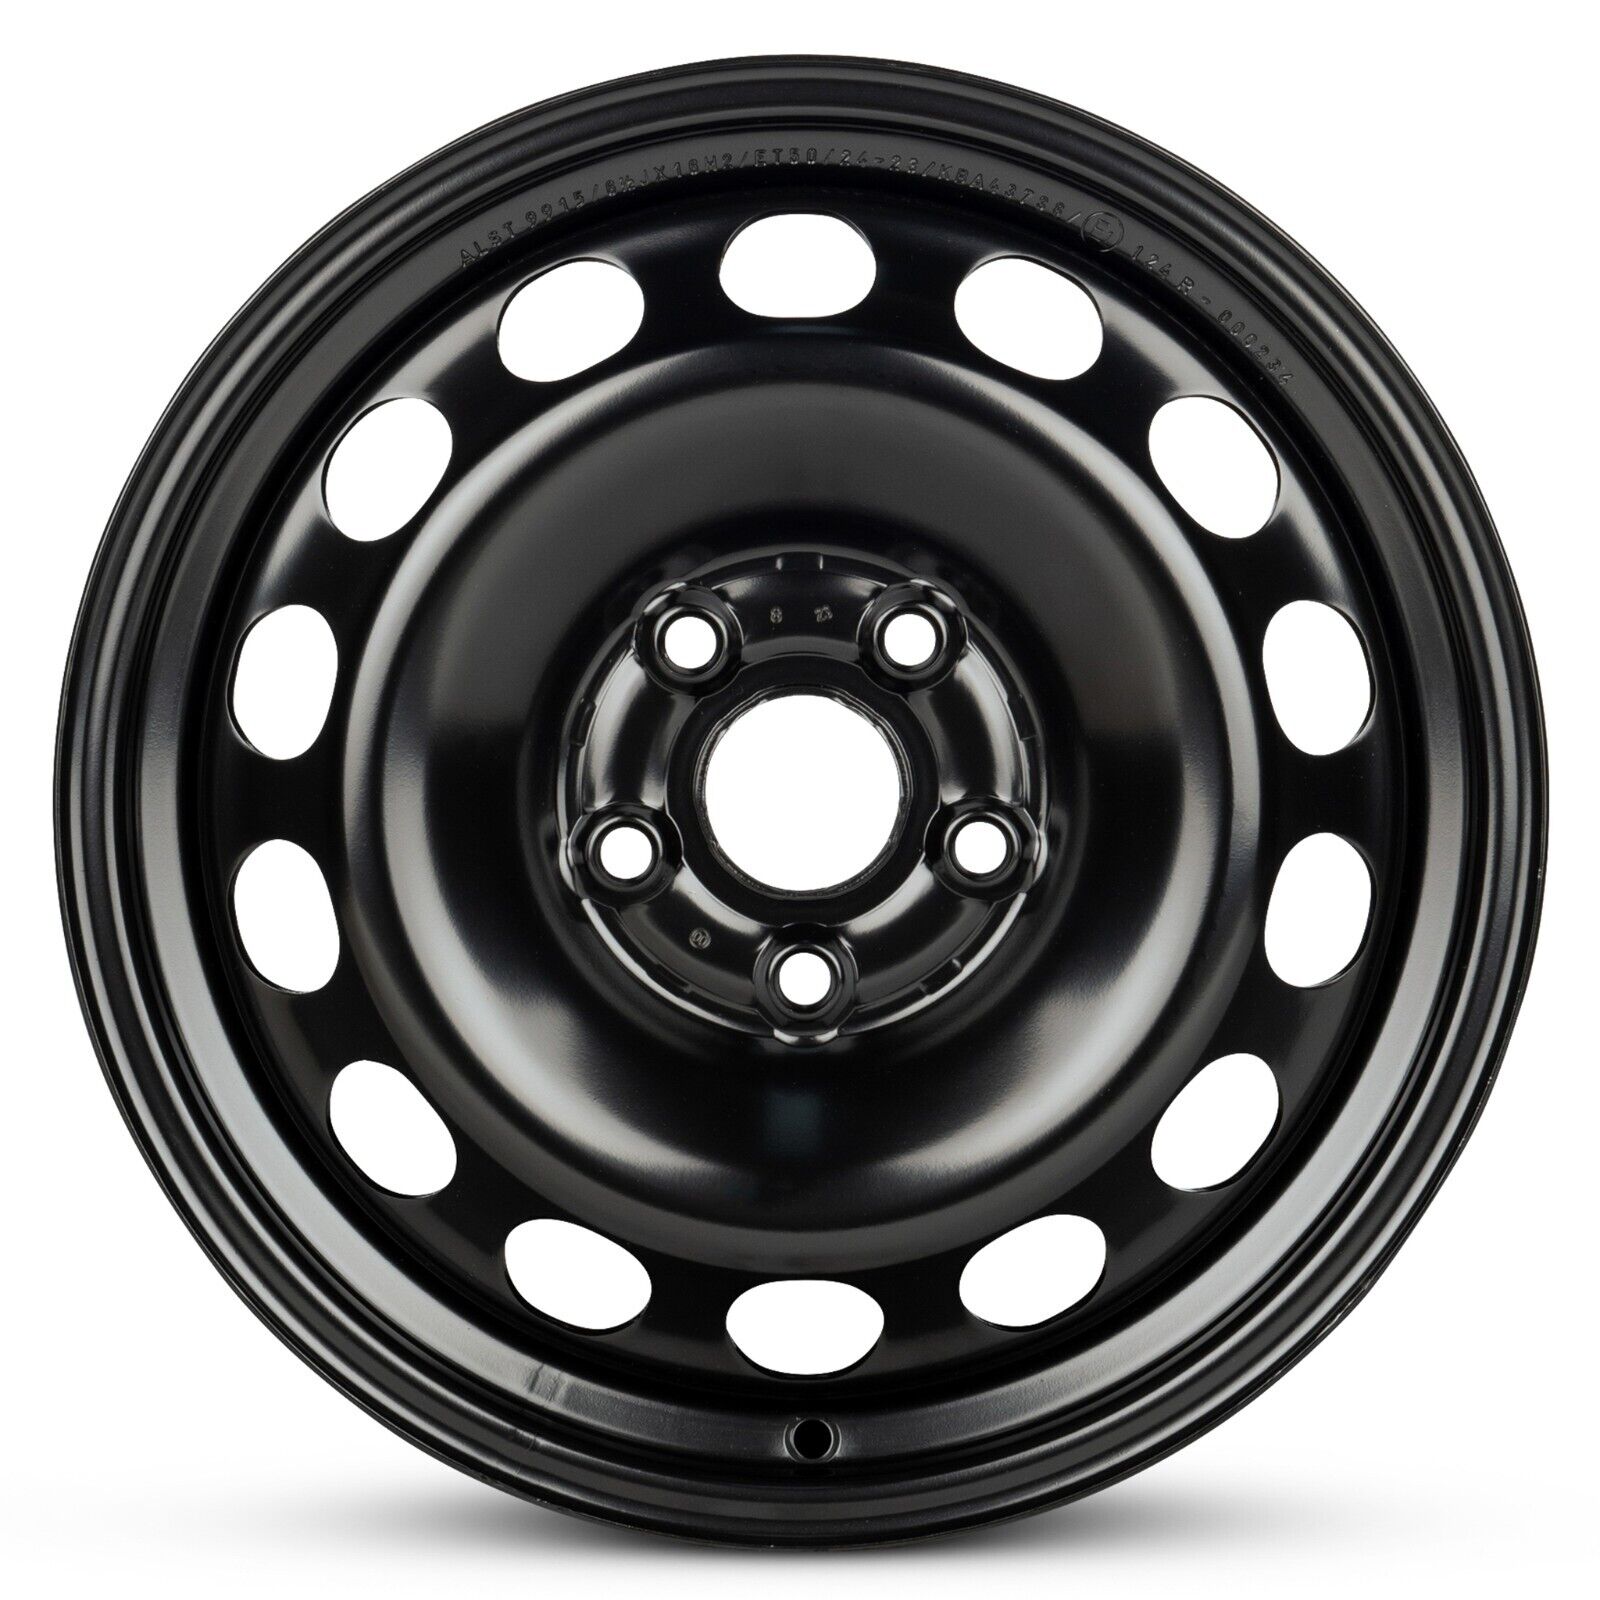 New Wheel For 2012-2020 Volkswagen Passat 16 Inch Black Steel Rim